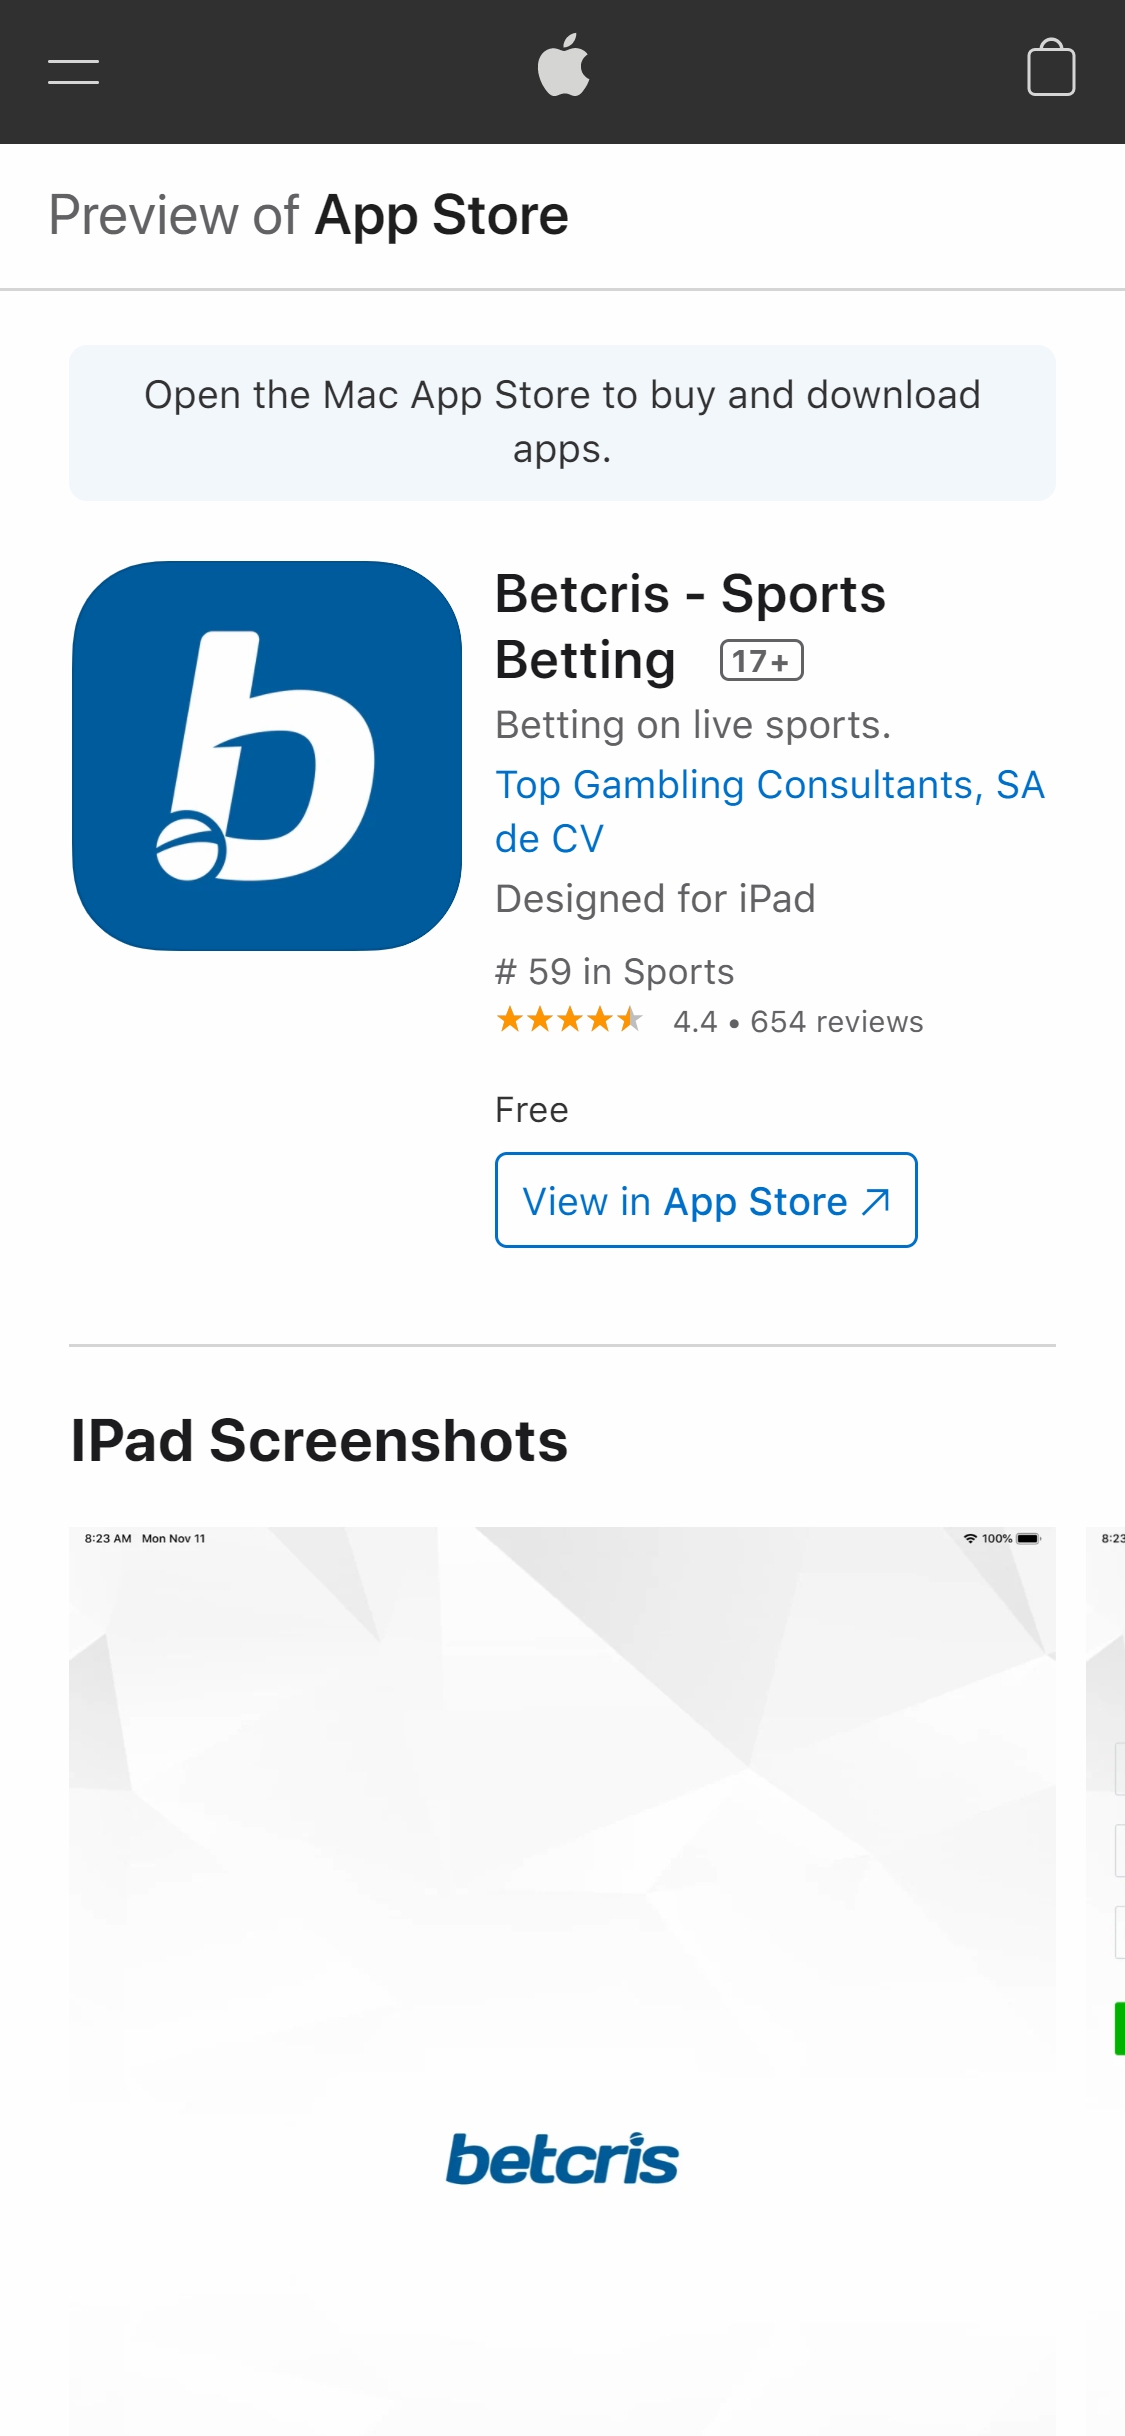 Betcris Casino Mobile App Review